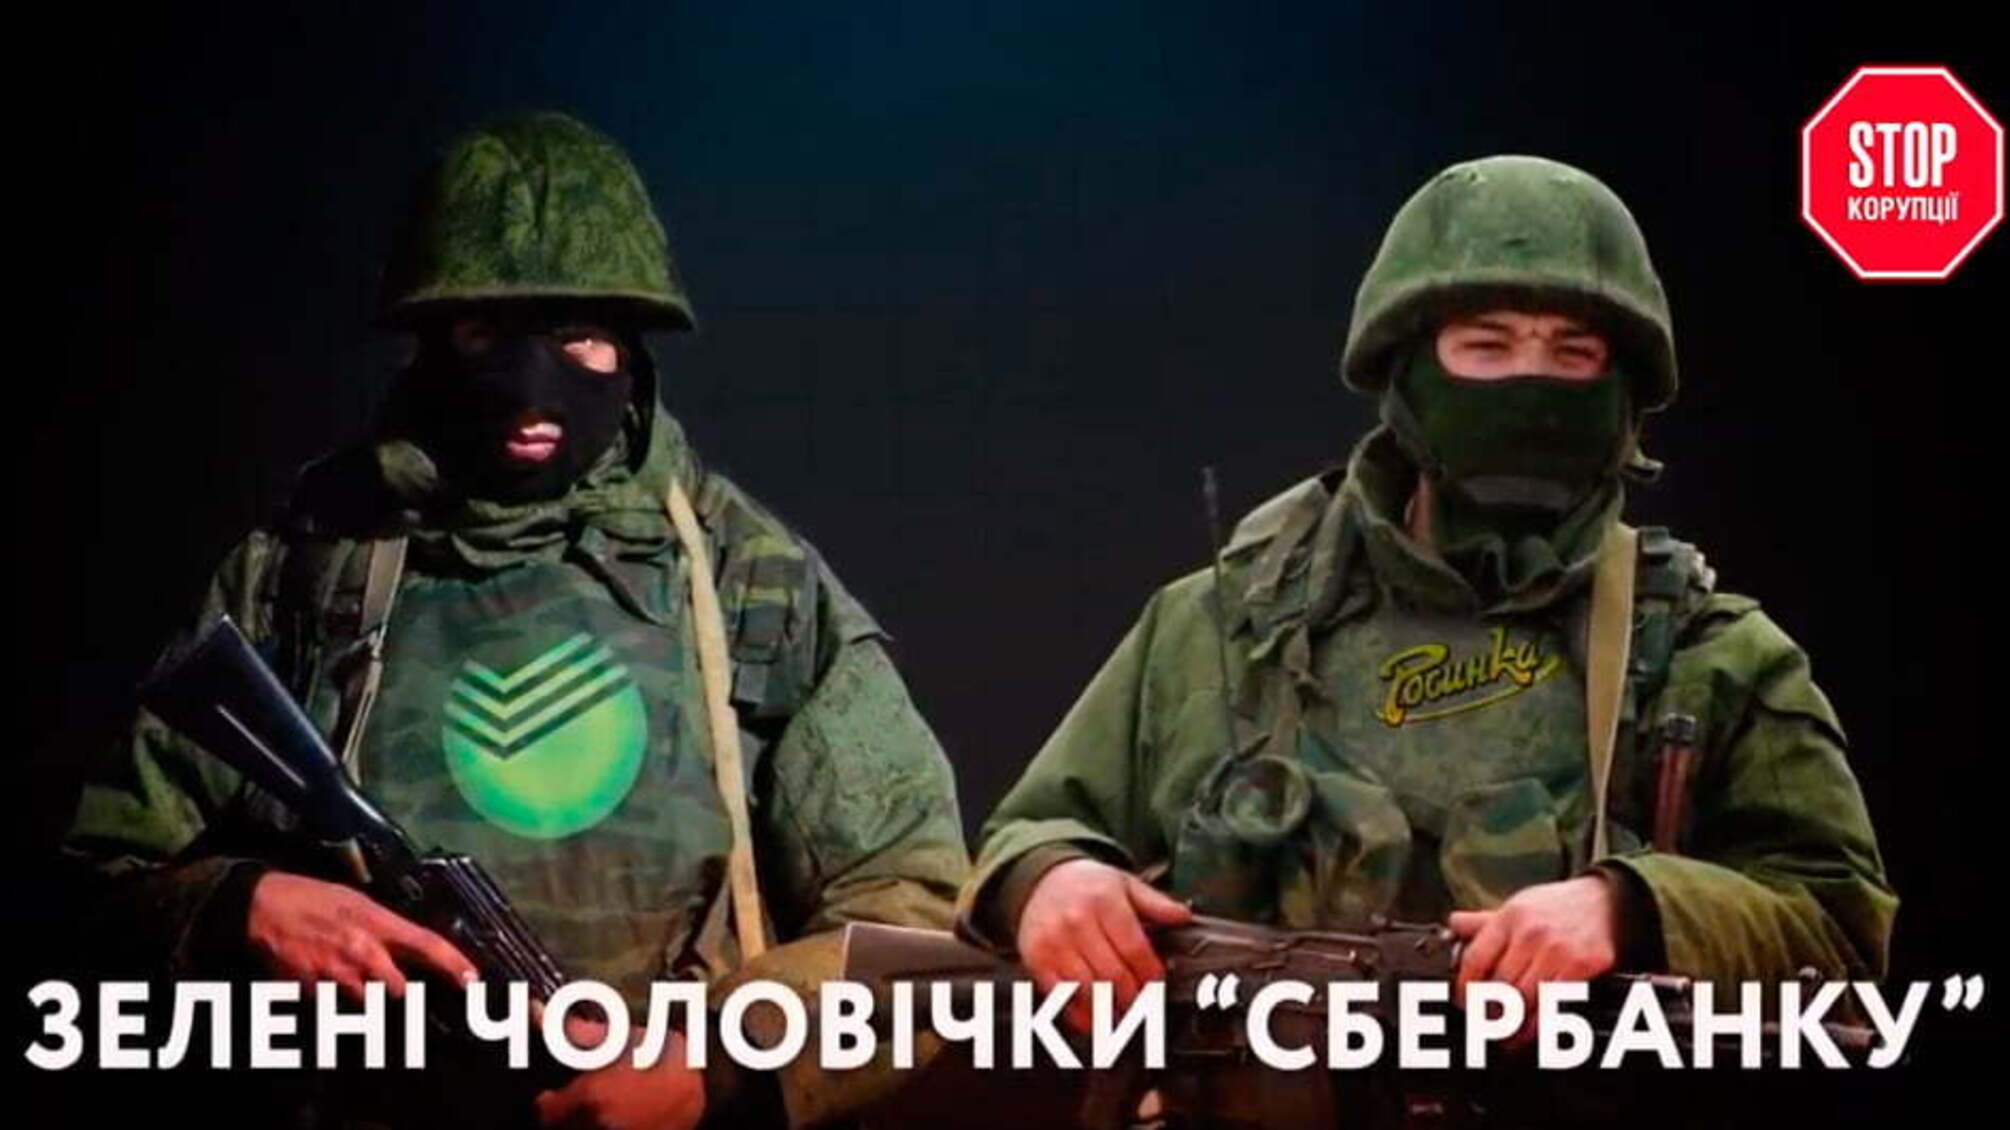 Зелені чоловічки “СБЕРБАНКУ” - російська установа фактично віджимає завод 'Росинка'